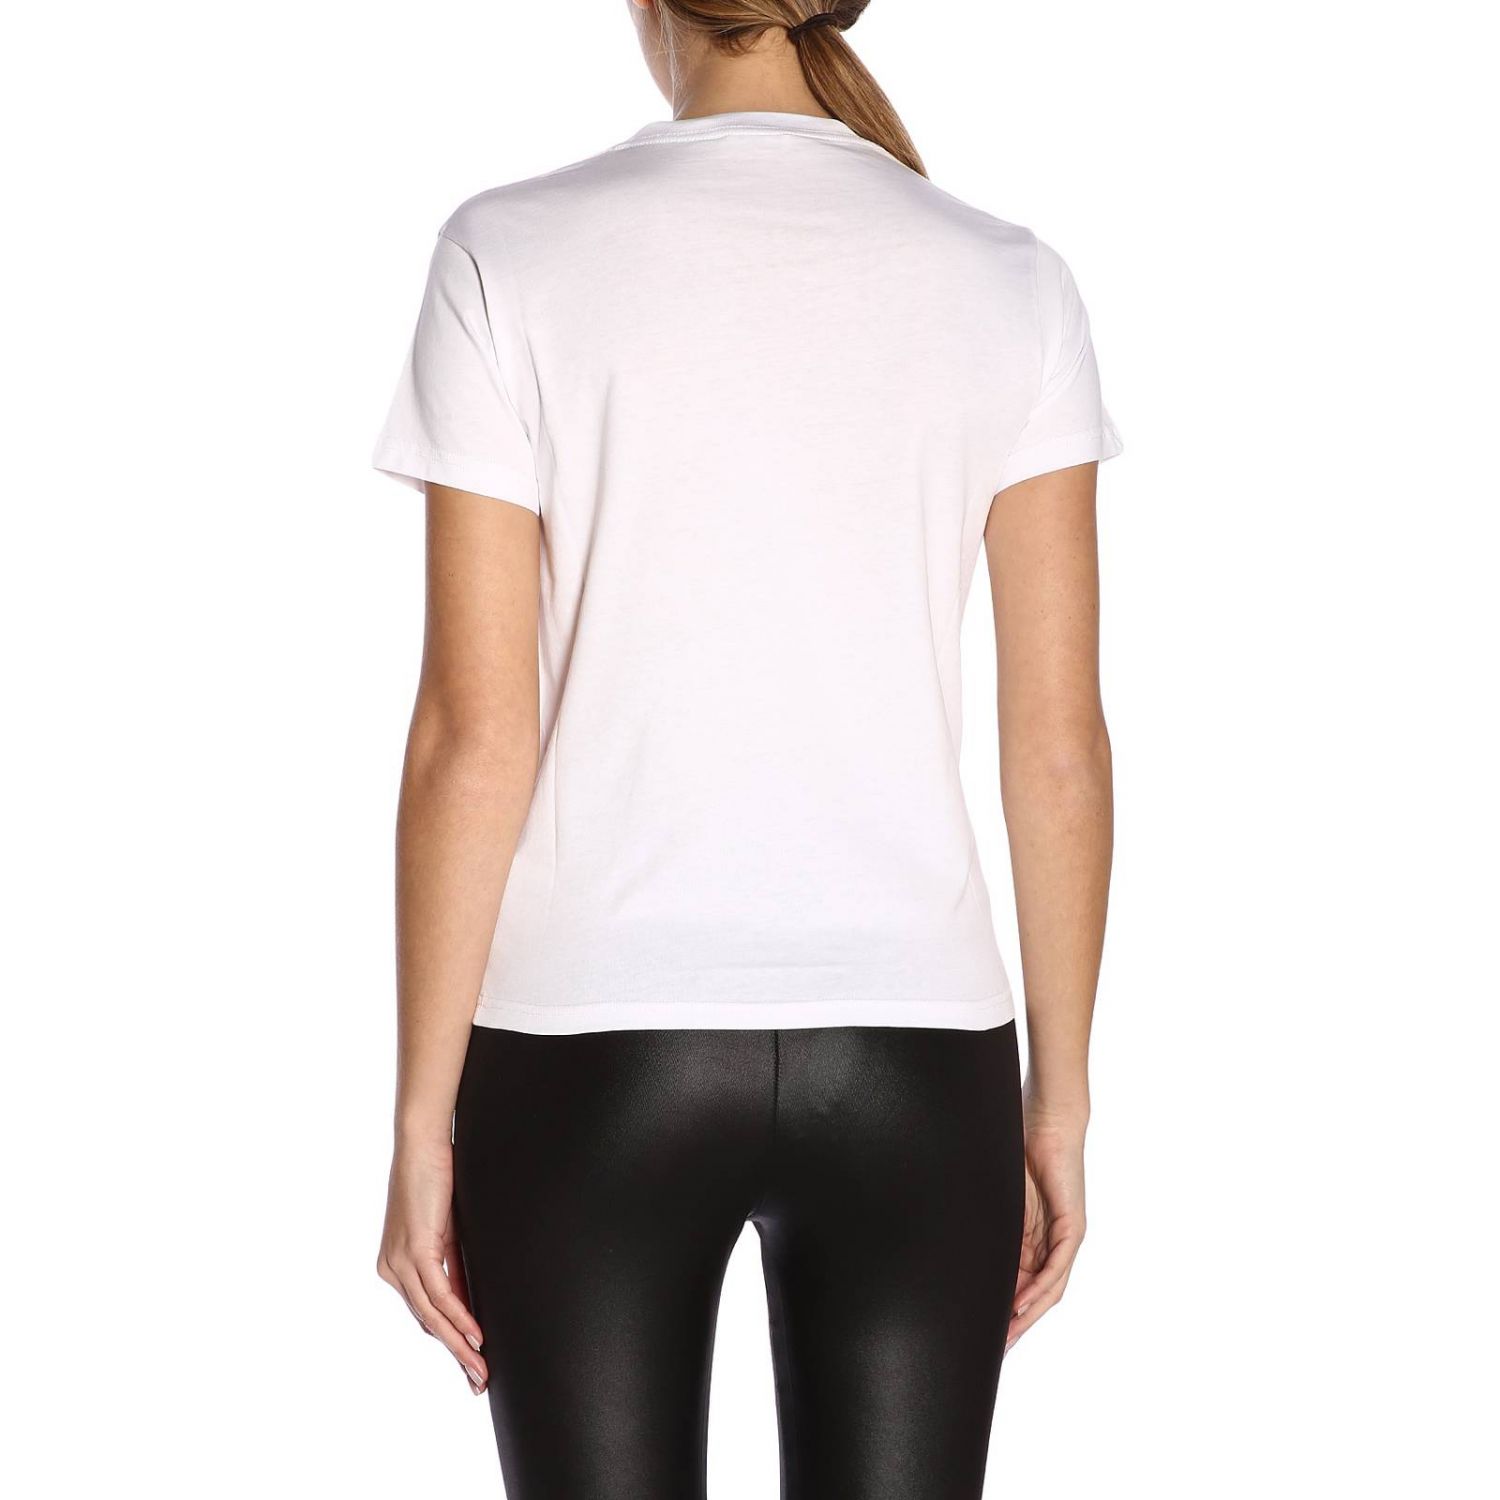 T-shirt women Balenciaga | T-Shirt Balenciaga Women White | T-Shirt ...